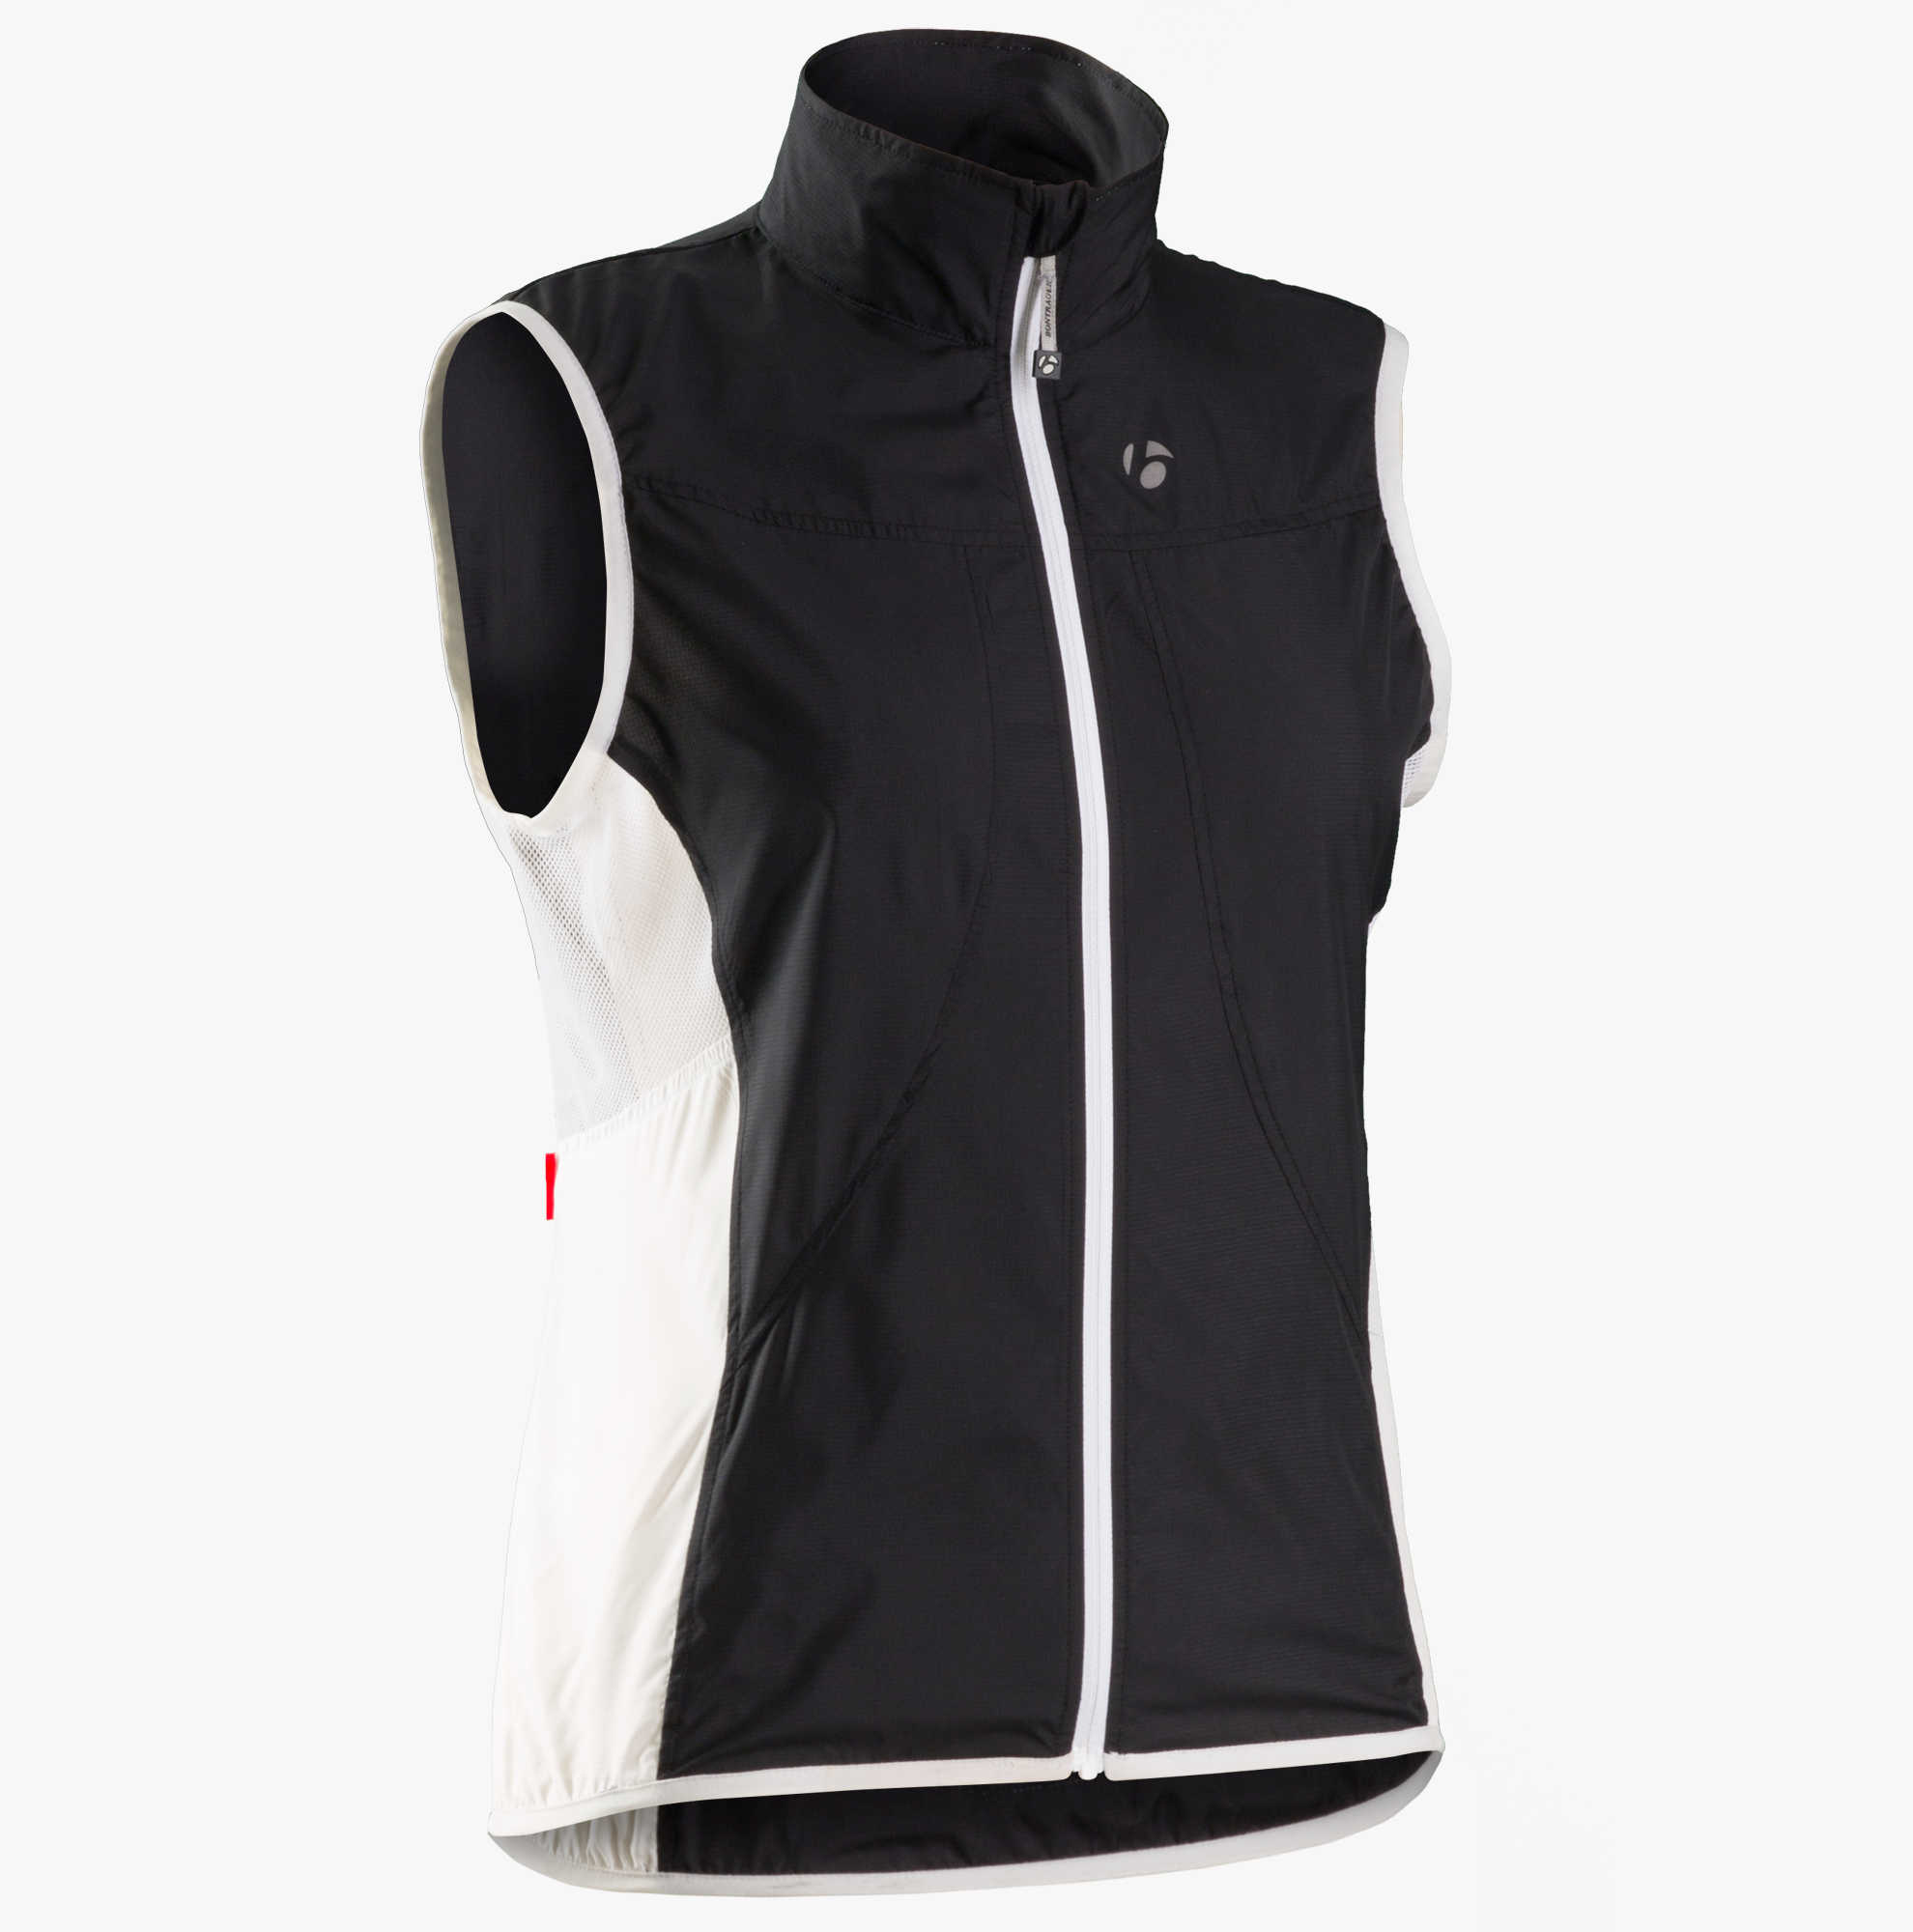 Bontrager Race Windshell Women's Vest | Cycling jackets & vests ...